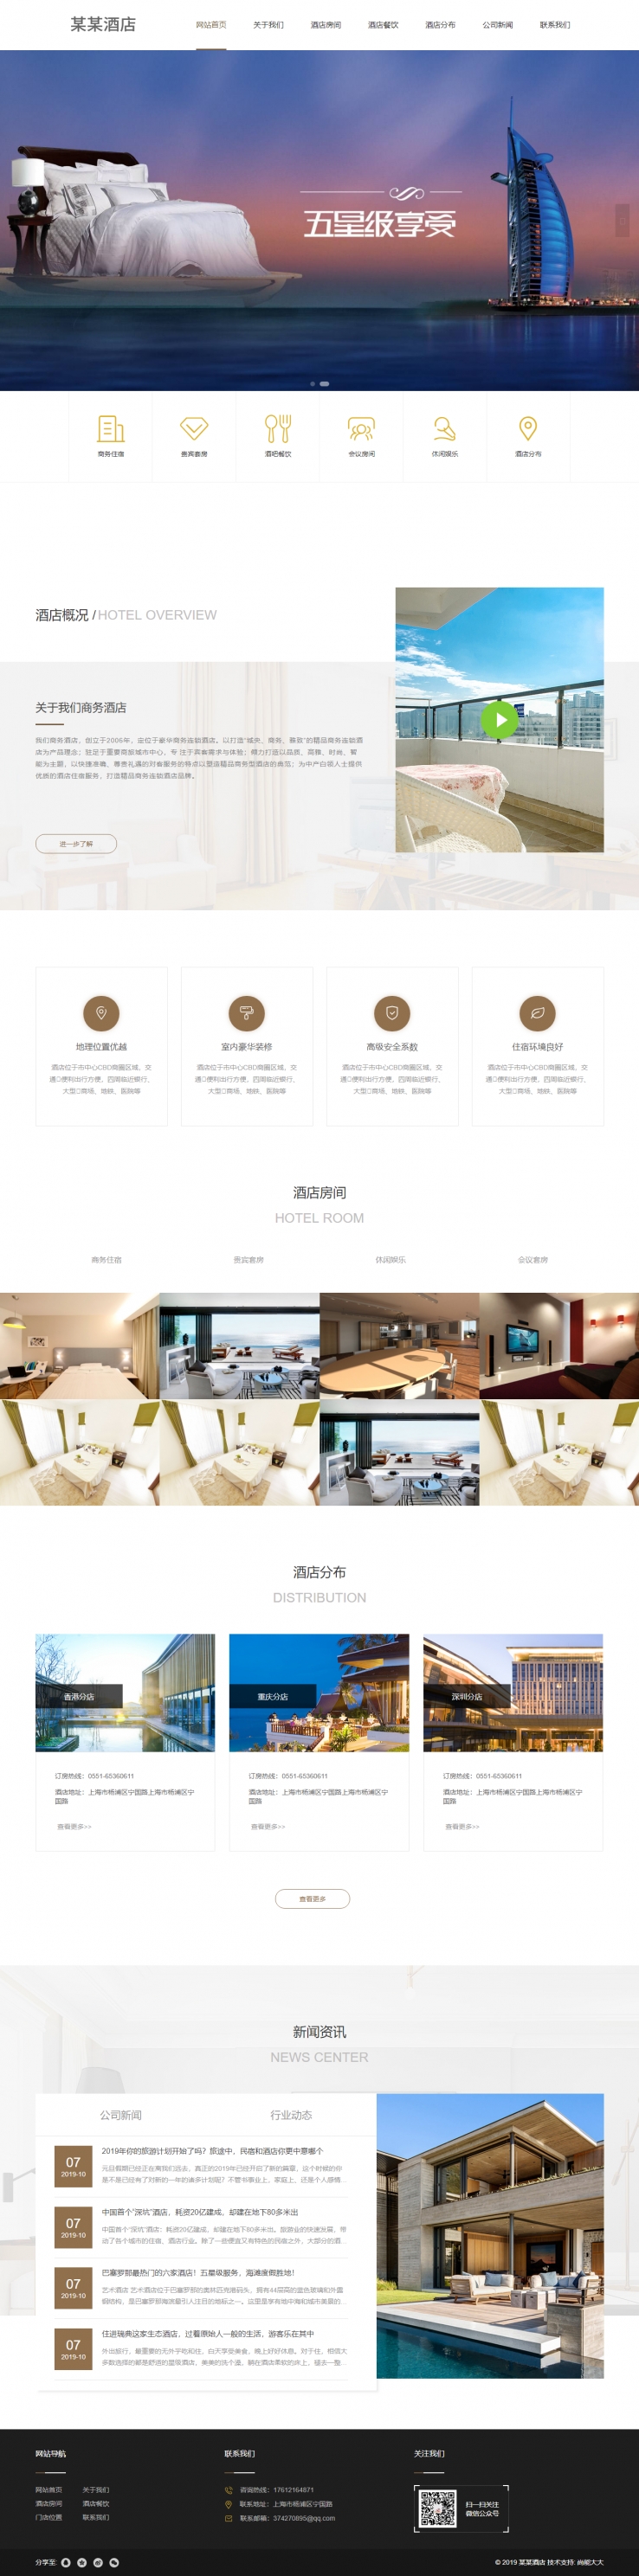 棕色大气风格的星级酒店展示企业网站源码下载